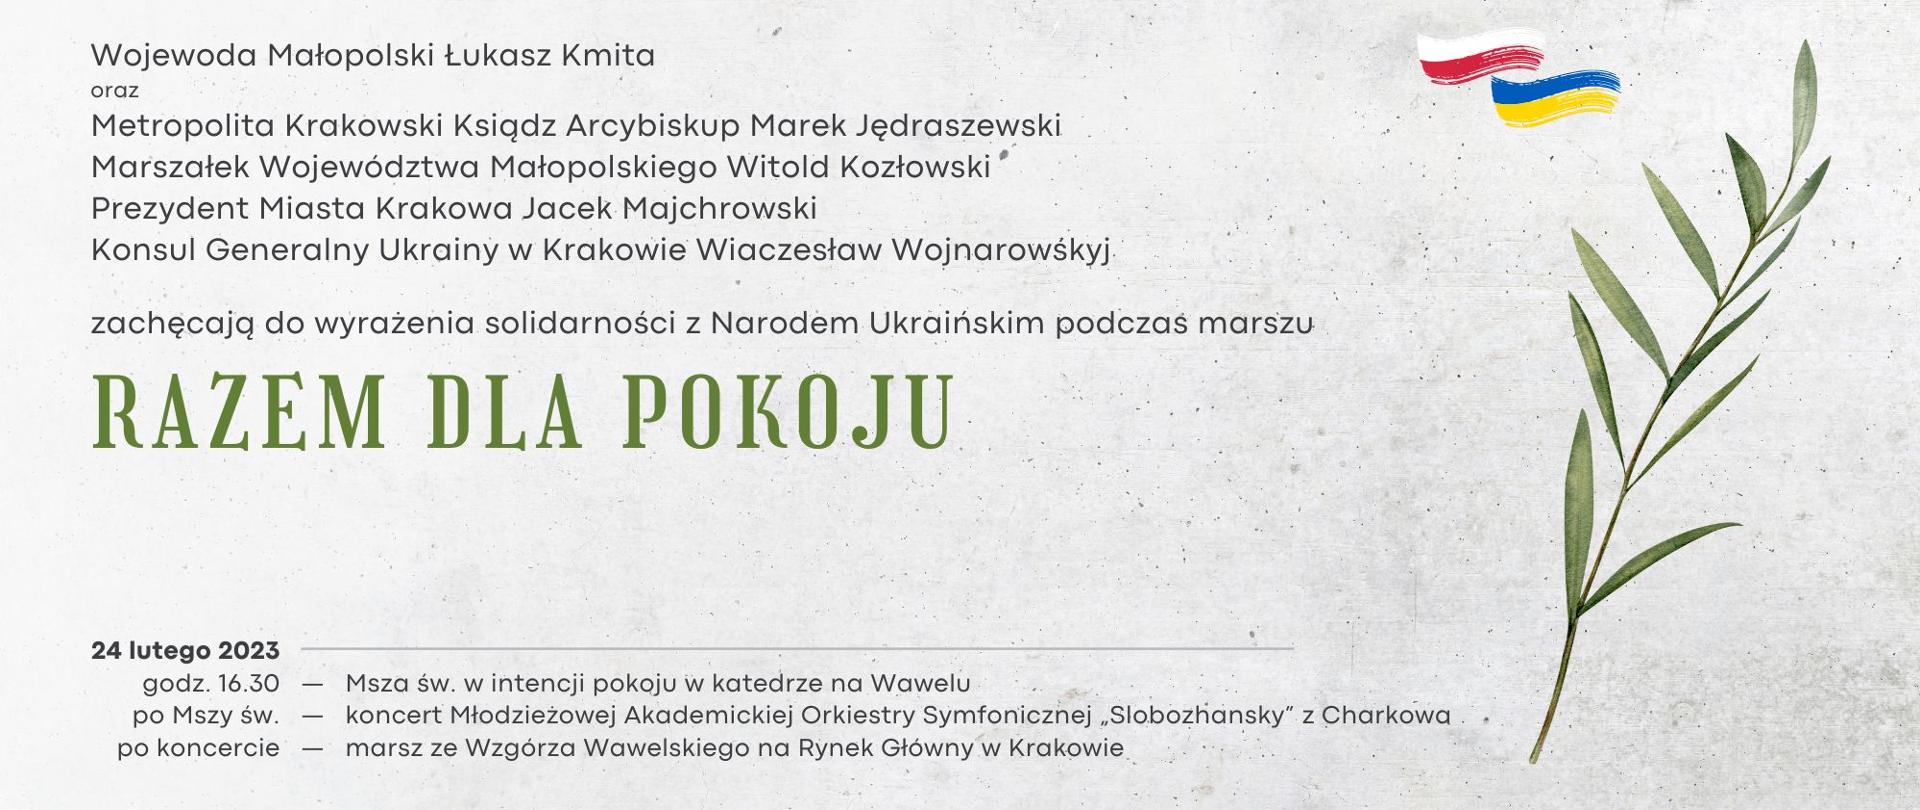 Zaproszenie na marsz "Razem dla pokoju" odbywający się 24.02.2023 w Krakowie